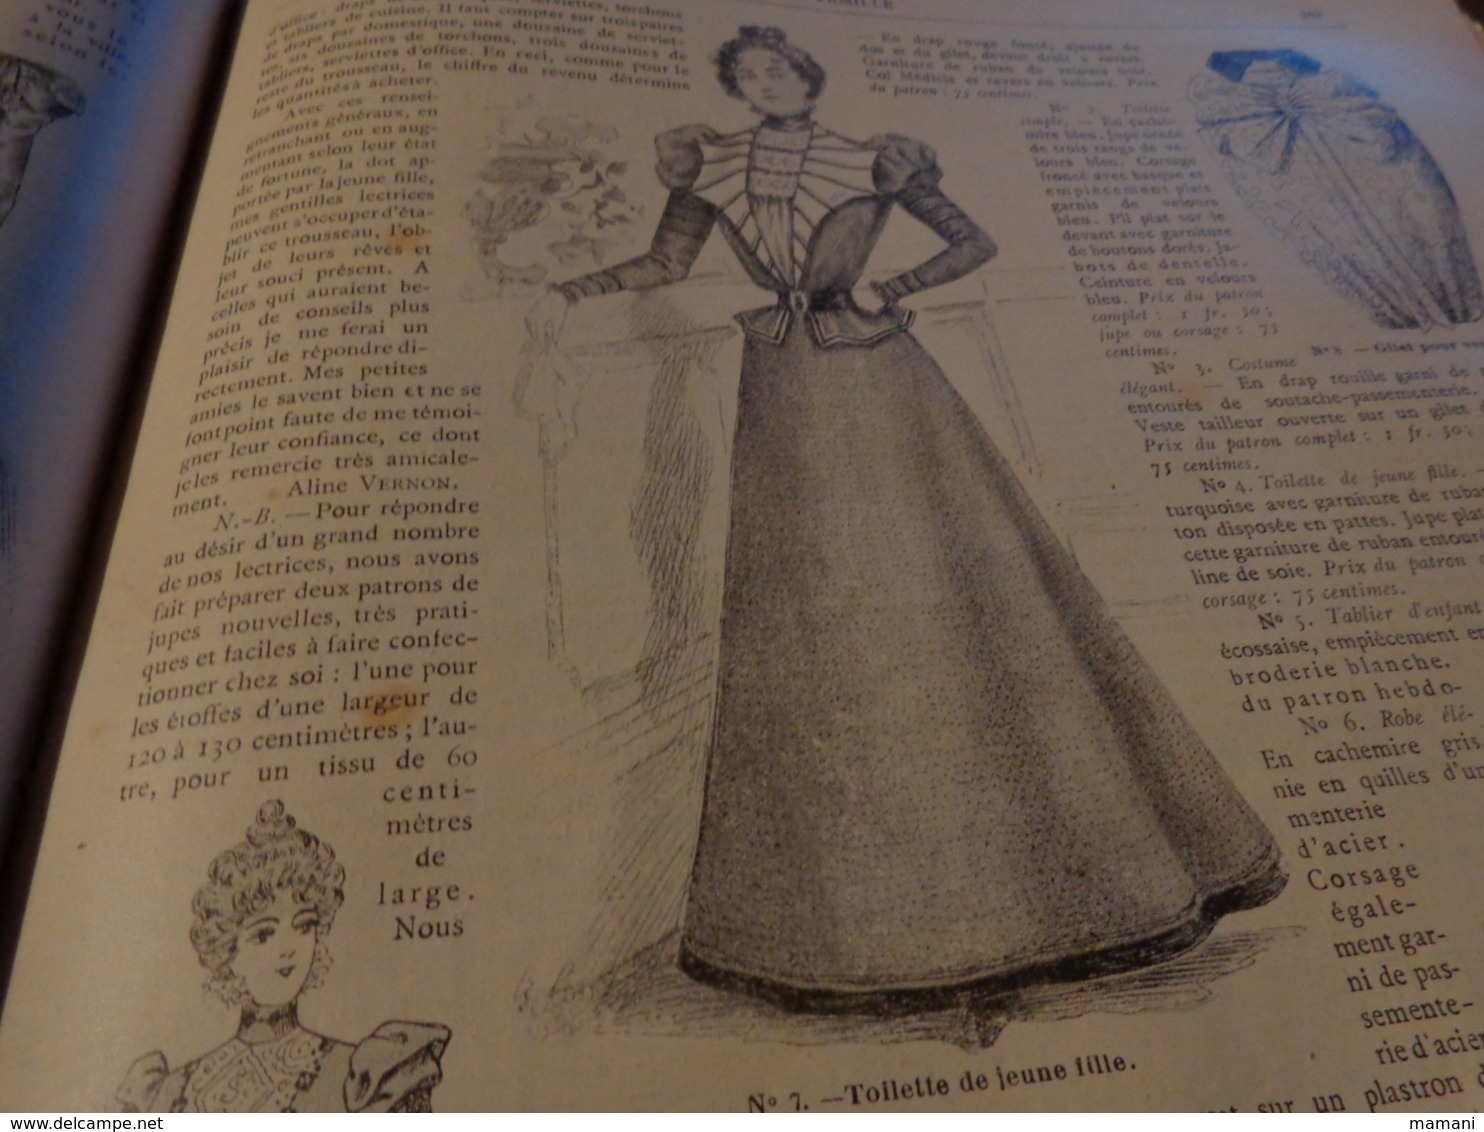 LA FAMILLE 1898 la mode illustree - belle toilette-chapeau etc...benjamin rabier